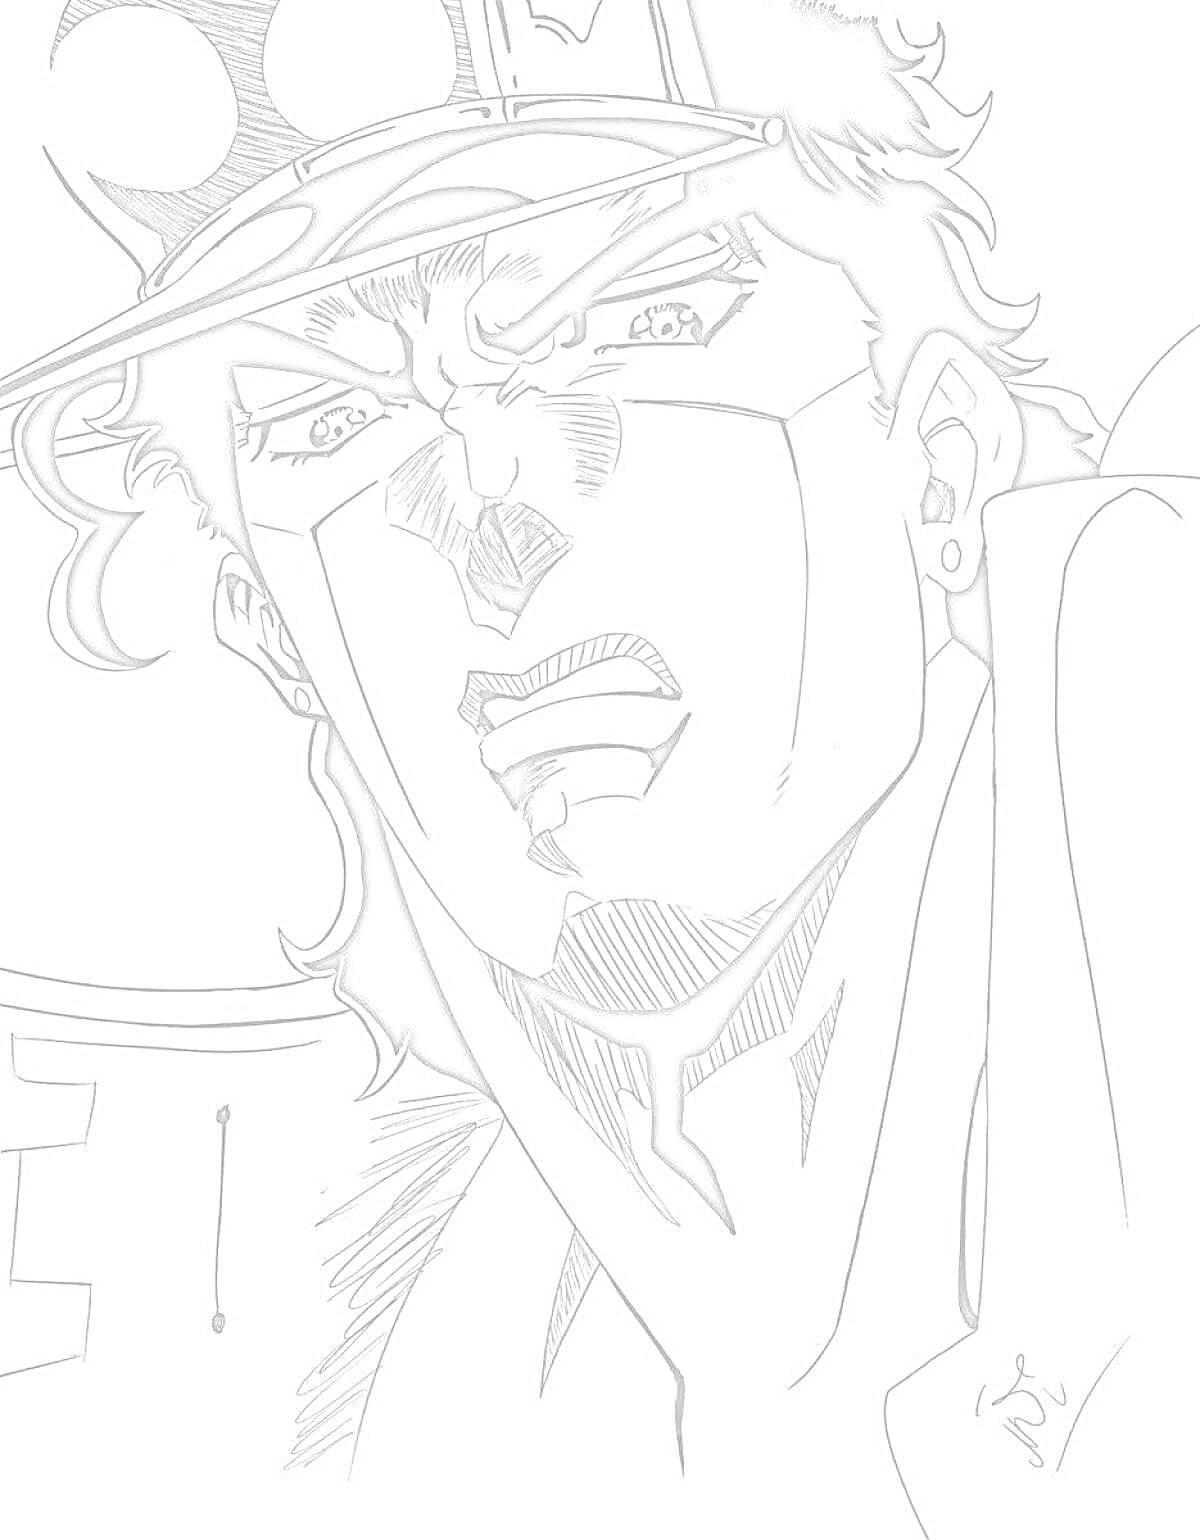 Раскраска Раскраска с Джотаро из аниме, крупный план его лица в шляпе, выражение лица грозное